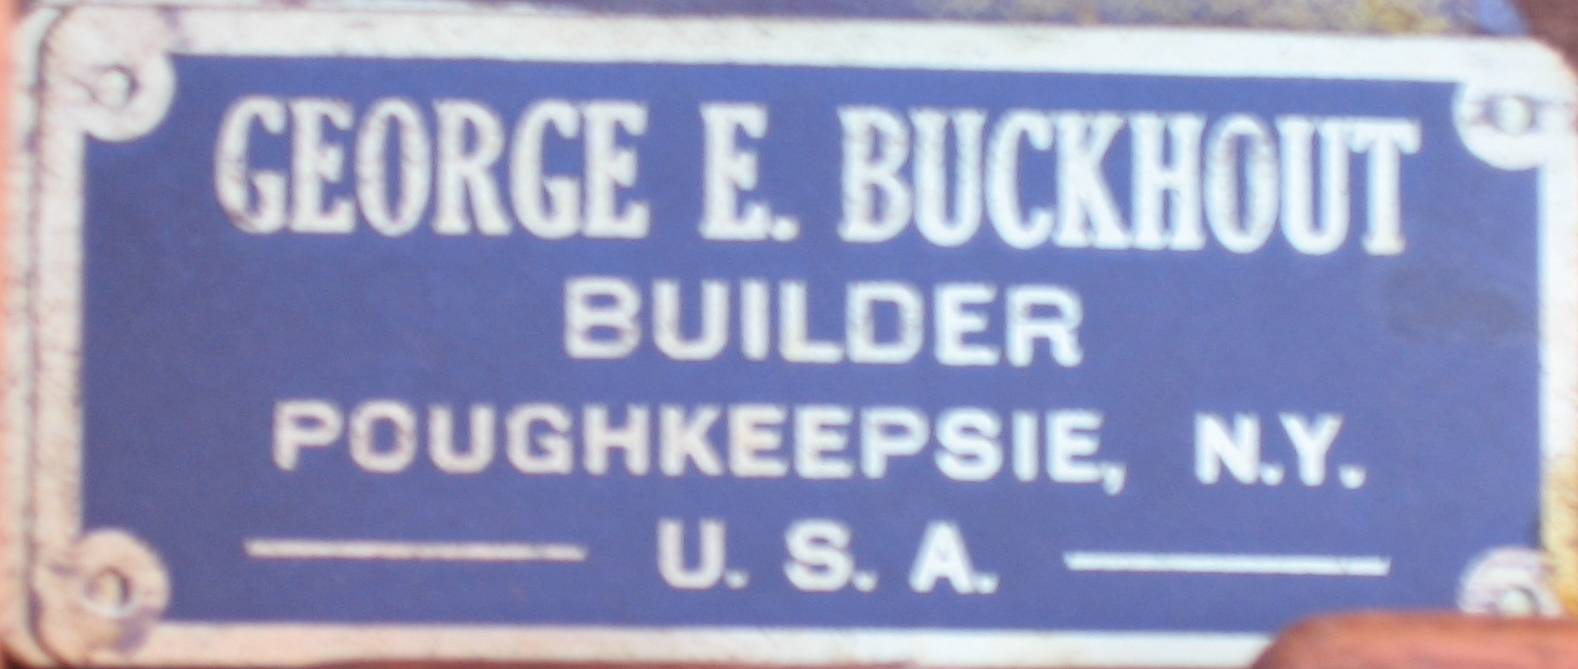 George Buckhout's tools